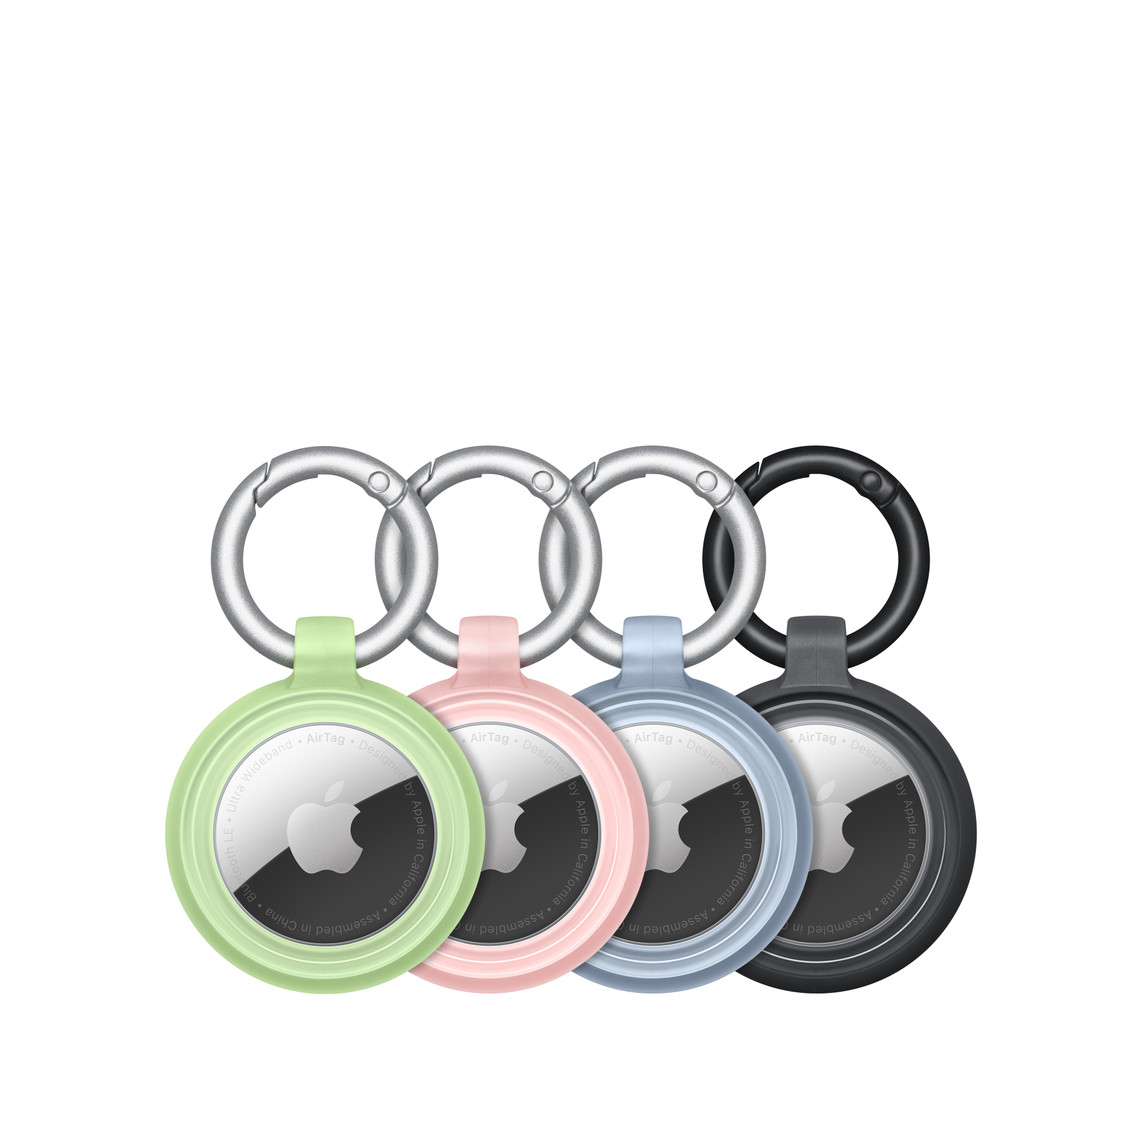 Fyra AirTag-enheter som sitter säkert på plats i OtterBox Lumen Series-skal i grönt, rosa, blått och svart, med Apple-logotypen synlig i mitten.